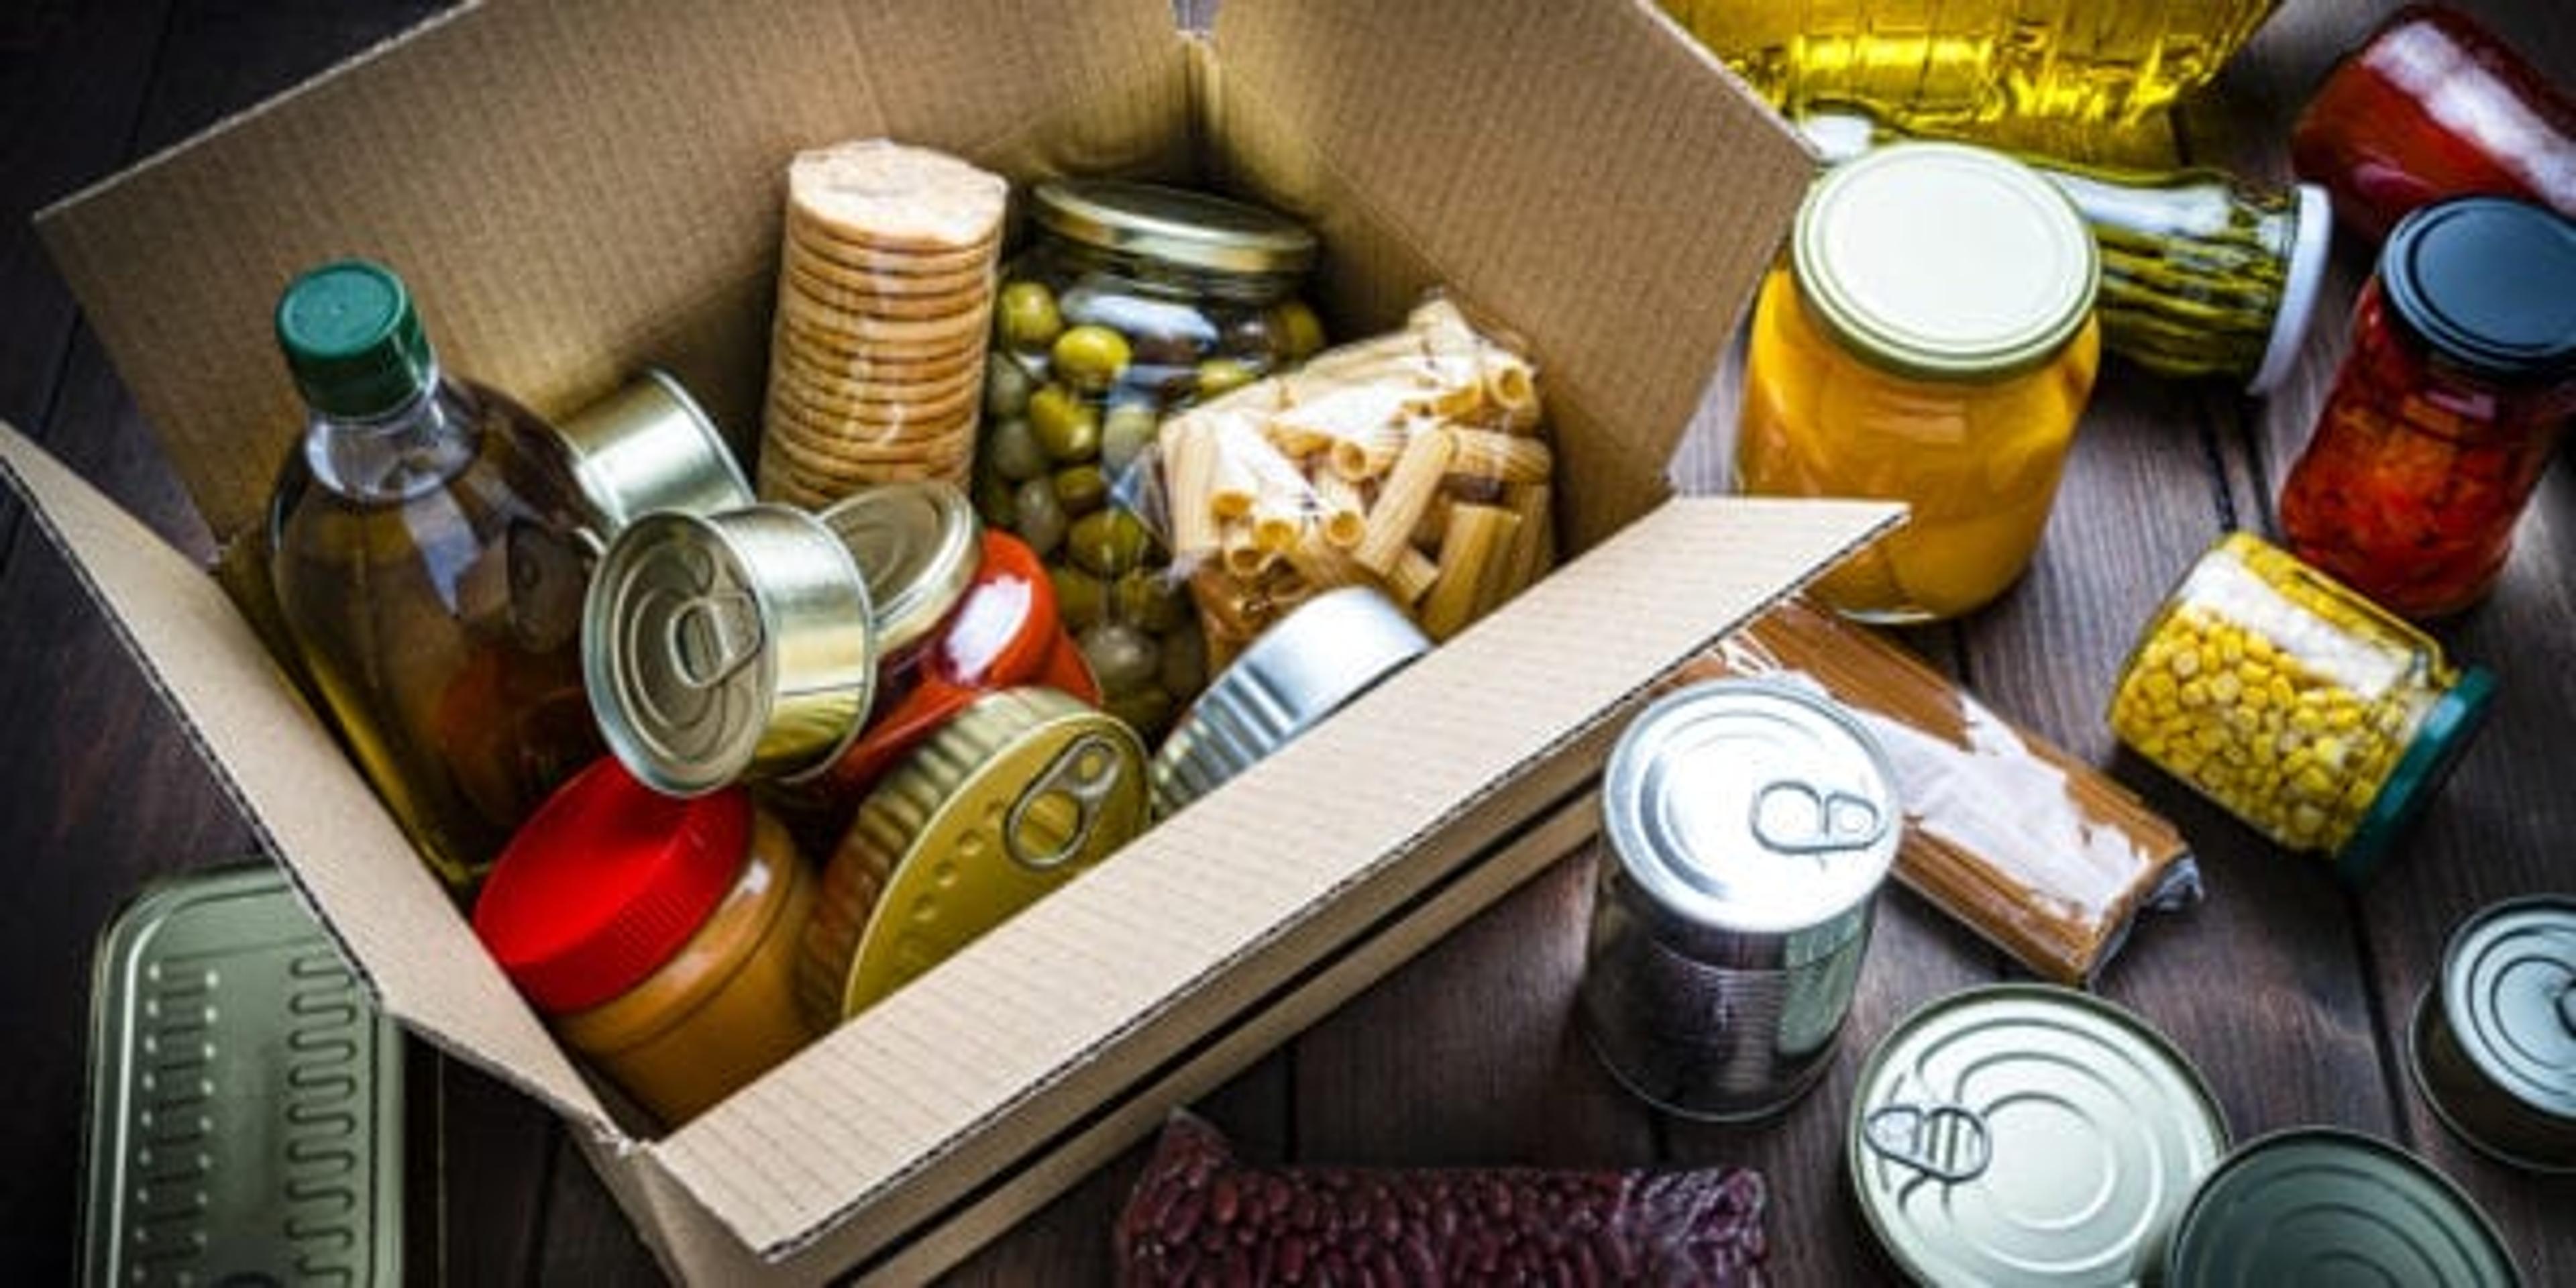 Non-perishable foods in box